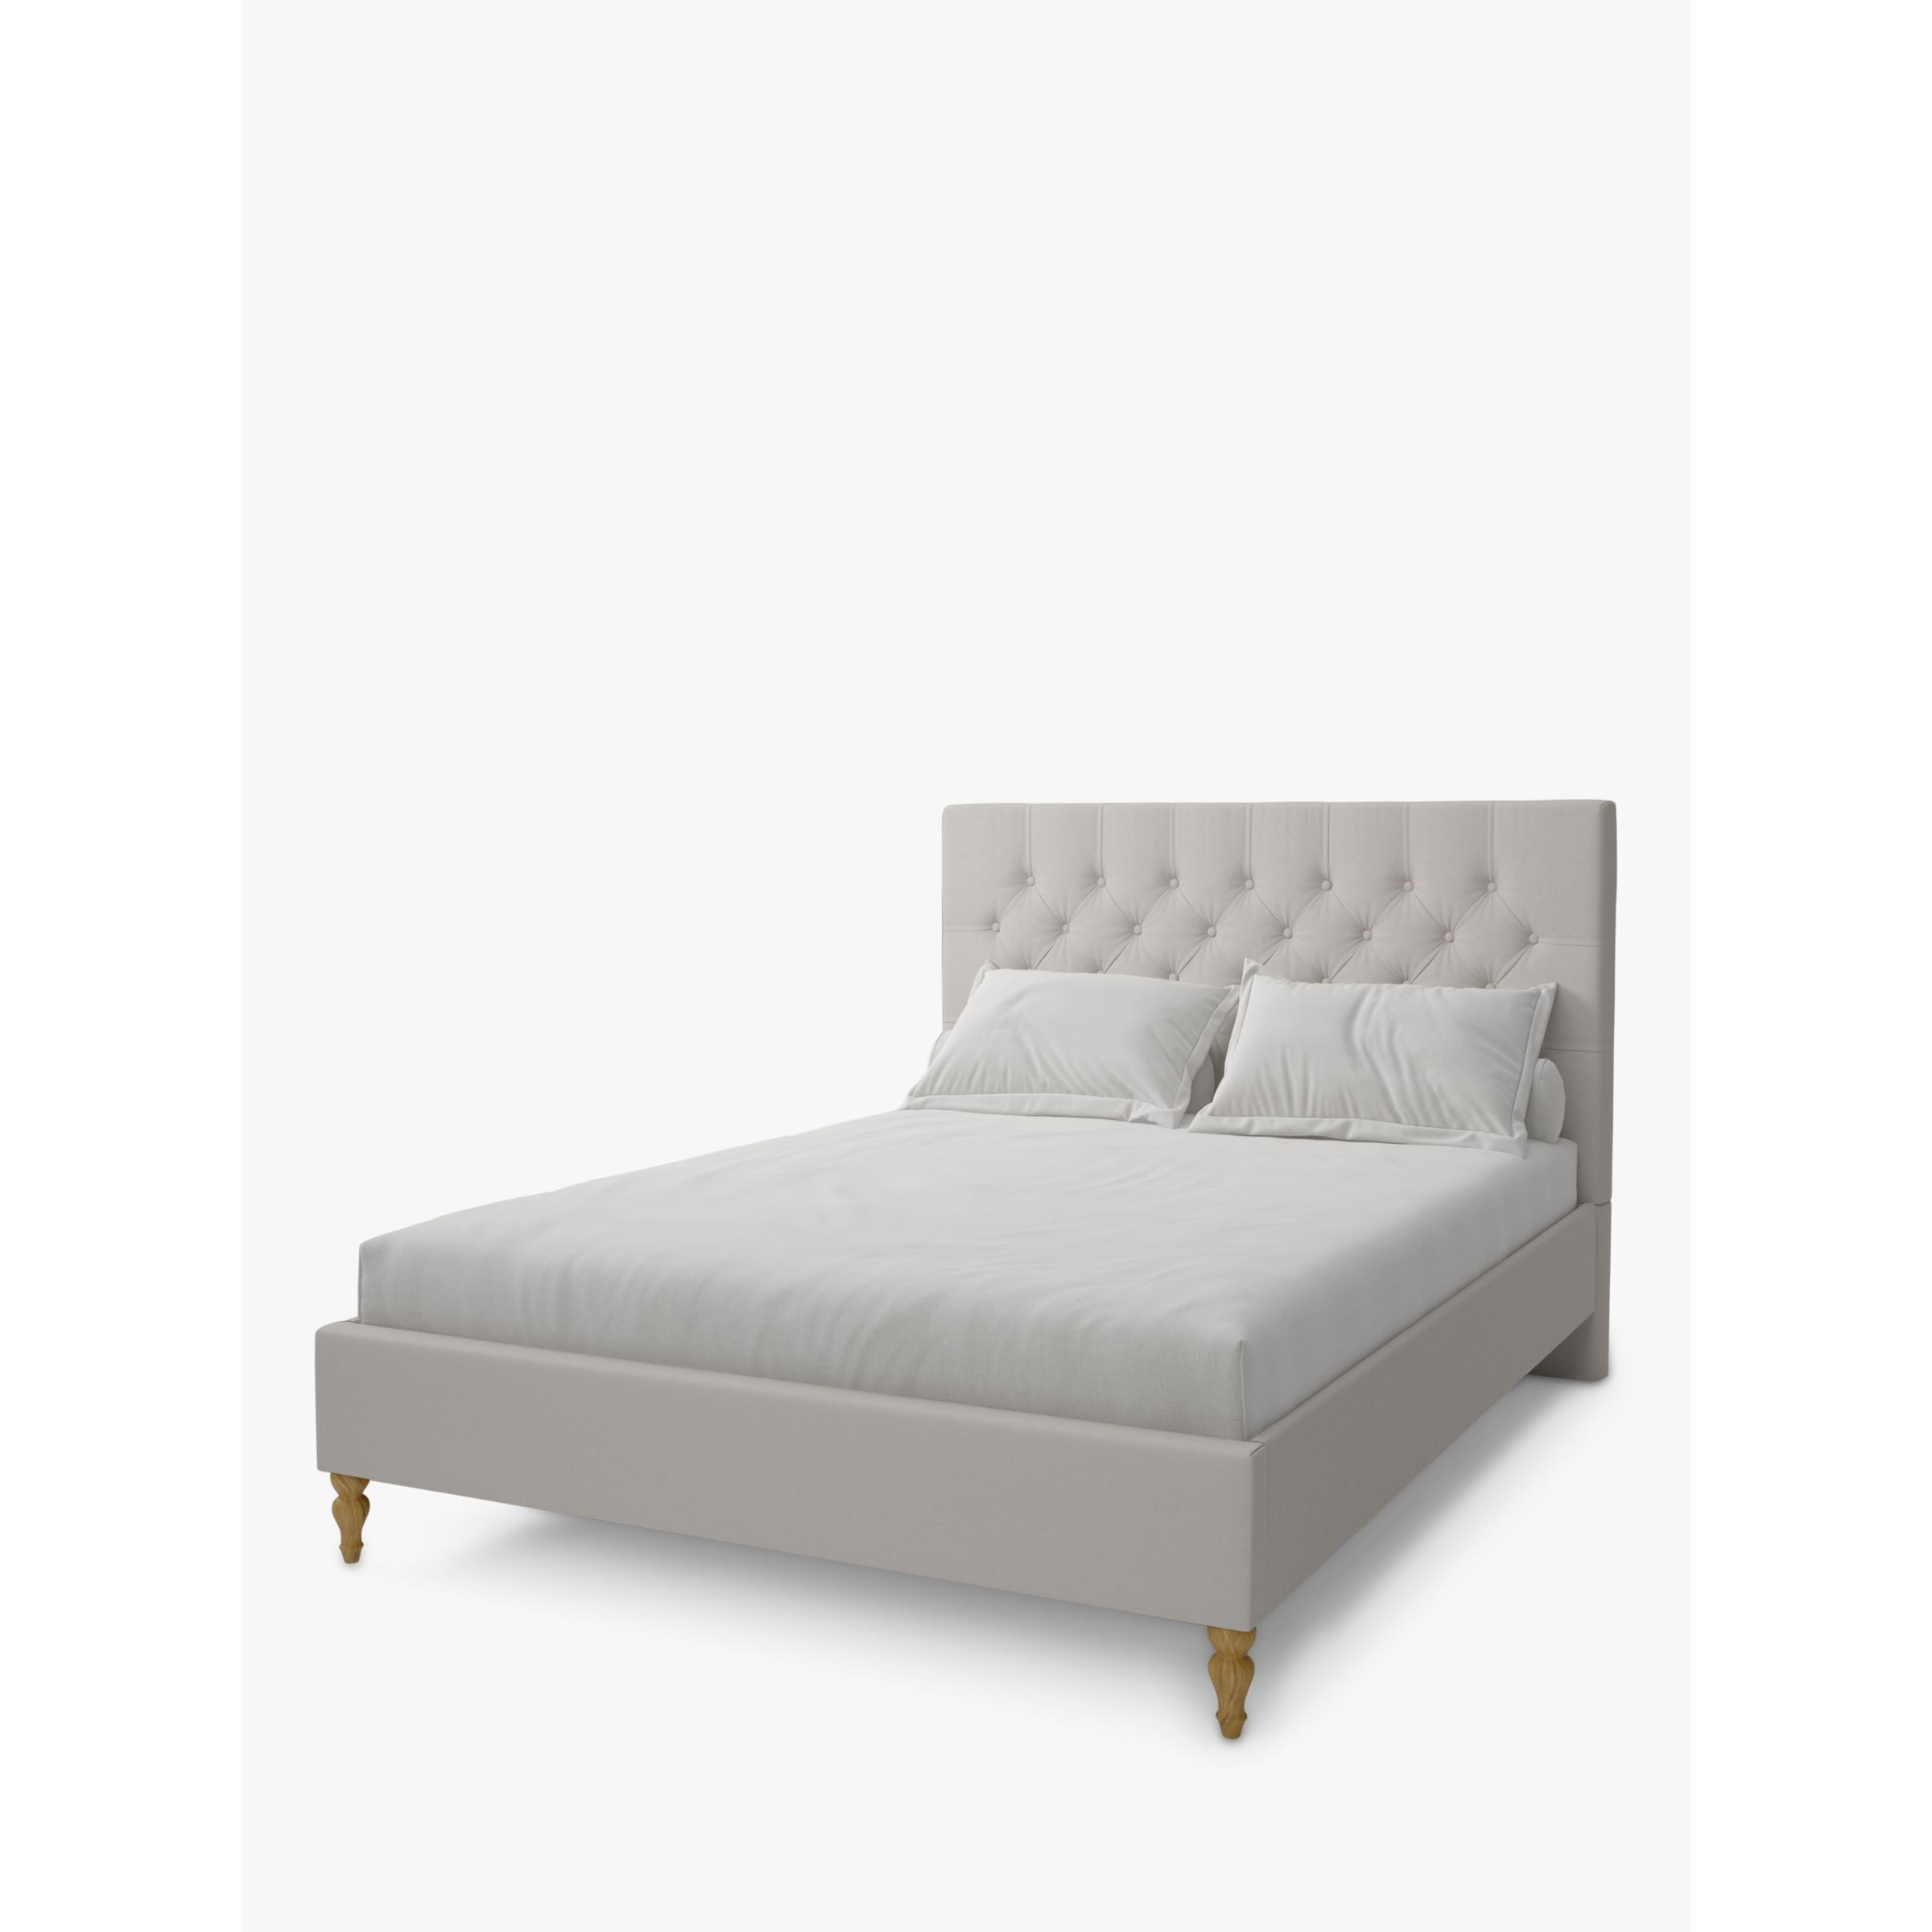 Koti Home Eden Upholstered Bed Frame, King Size - image 1